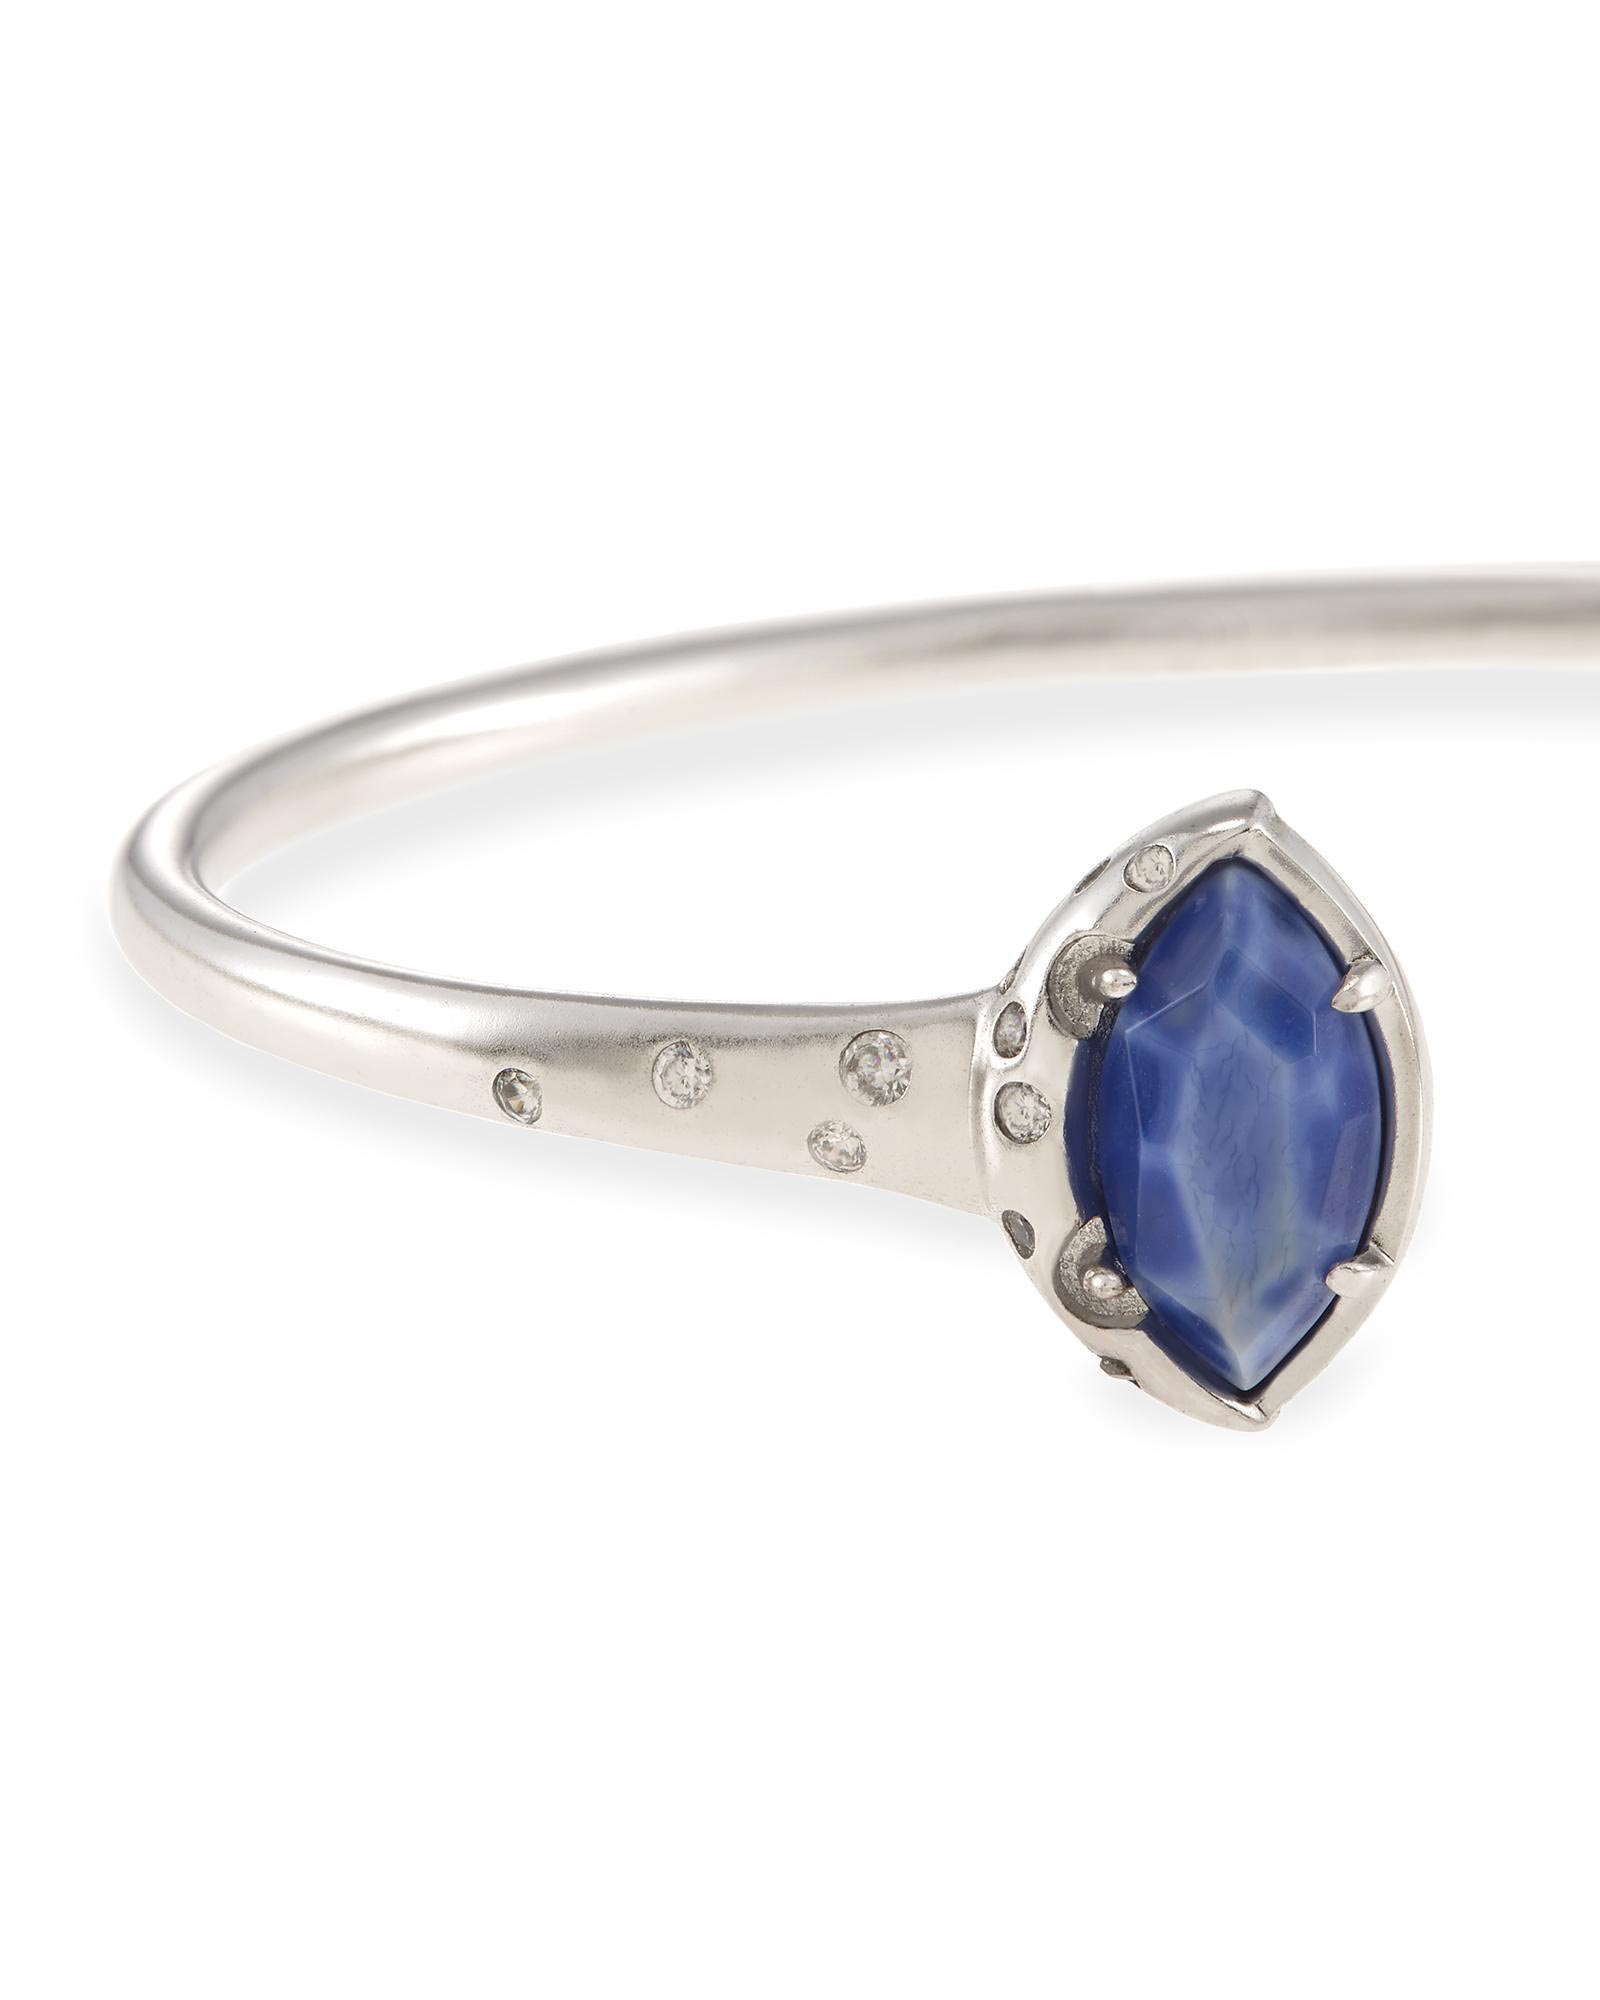 Laura Silver Cuff Bracelet in Blue Agate | Kendra Scott